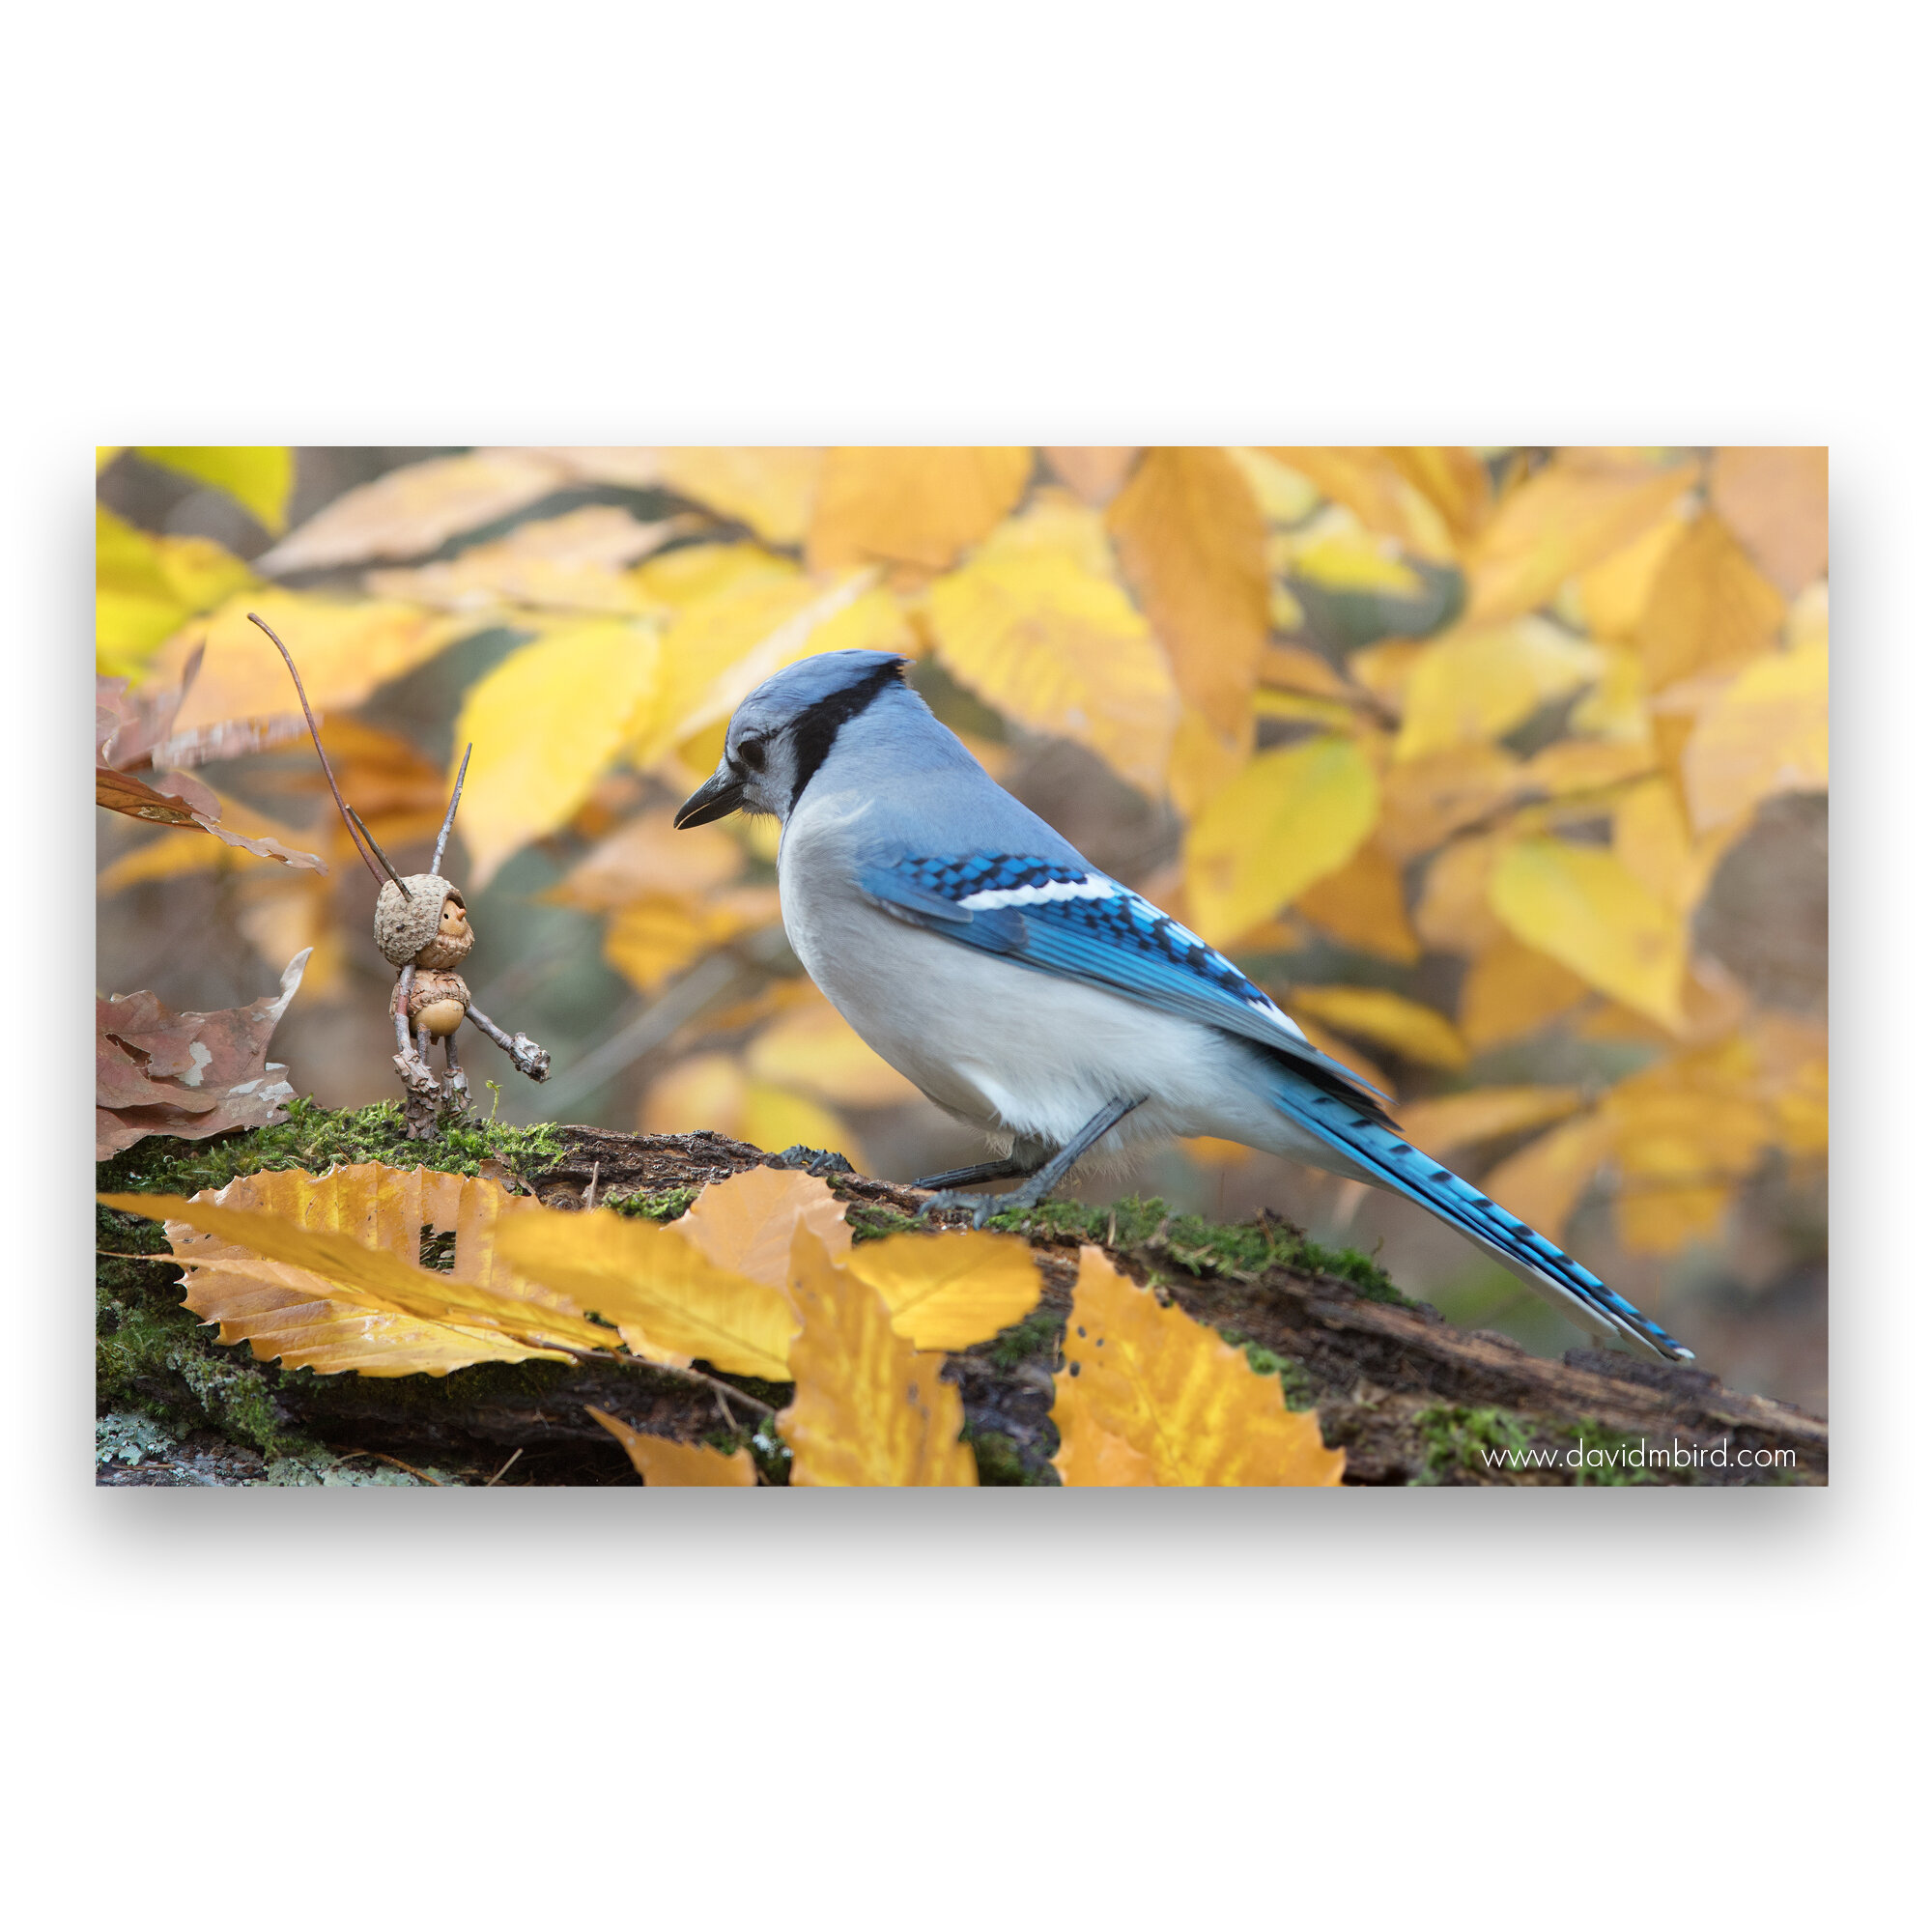 bluejay-becorns-david-m-bird